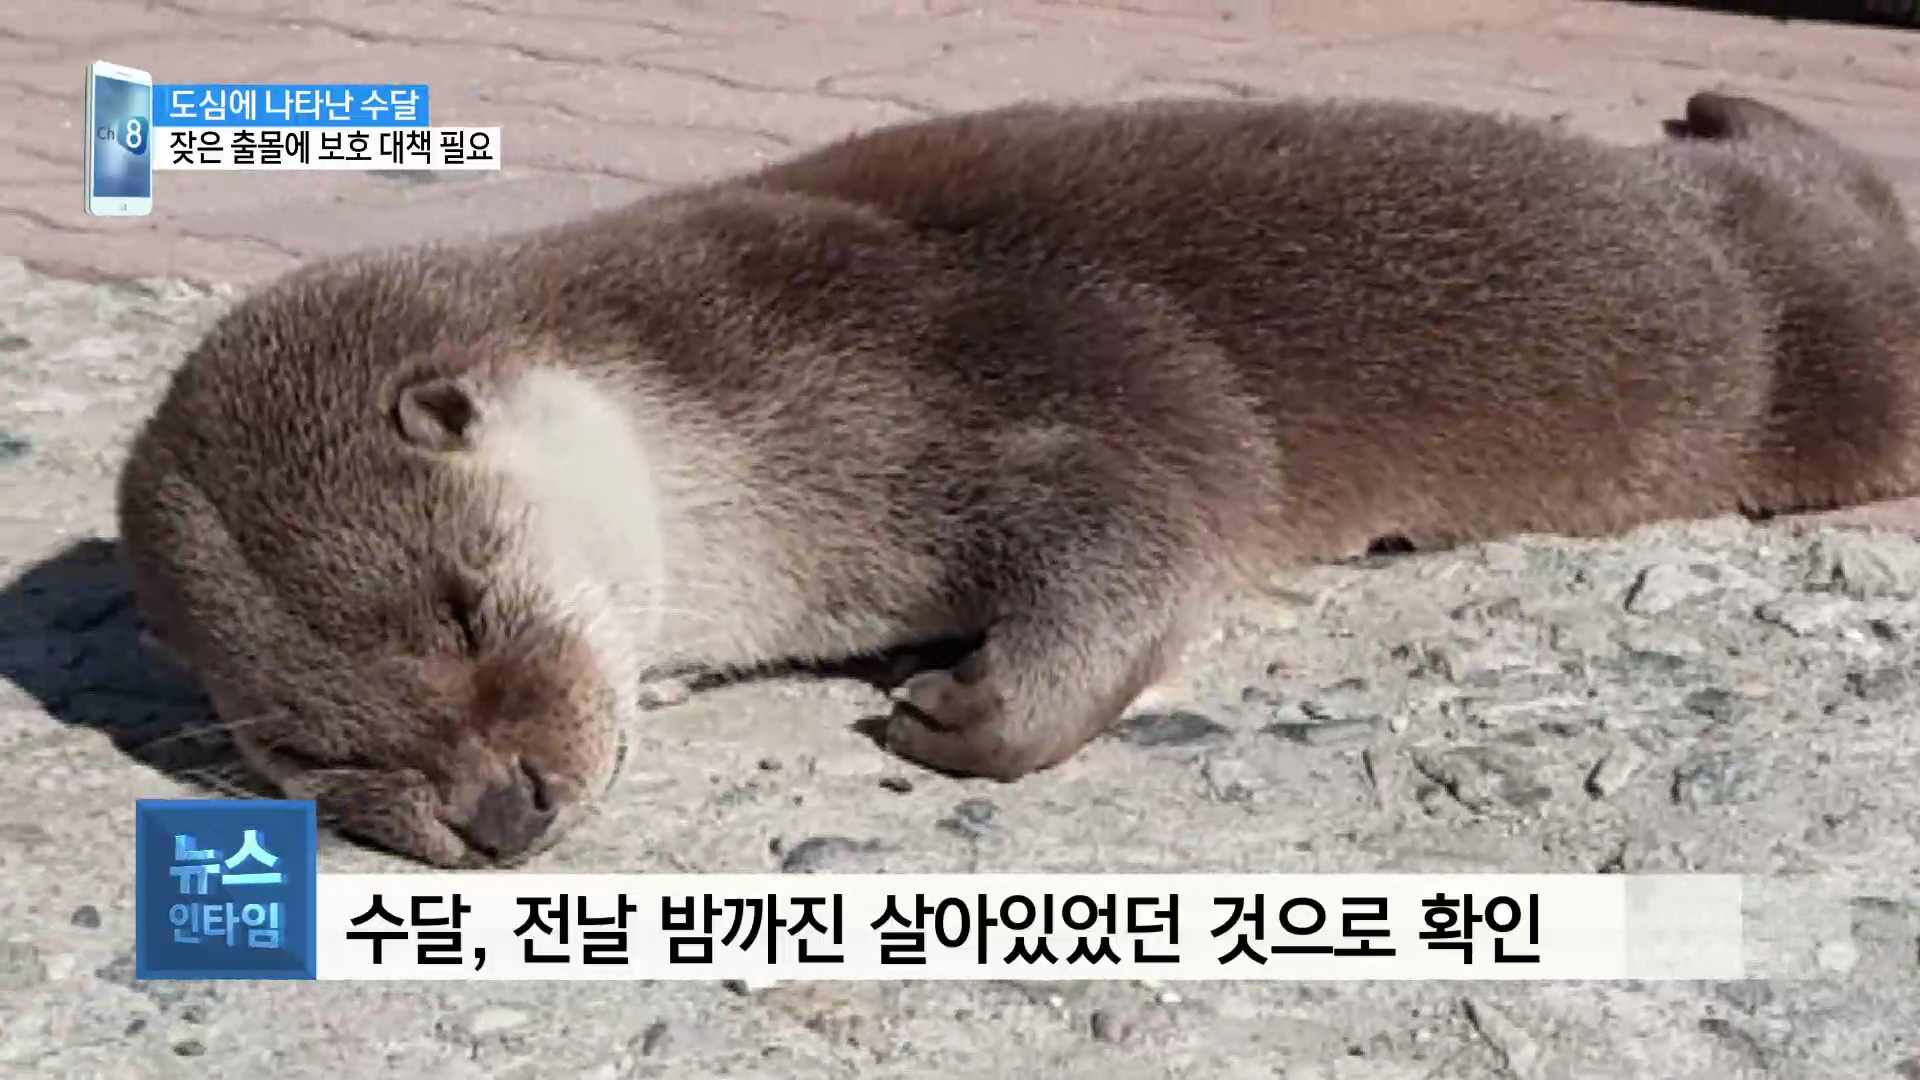 (스마트폰R) 도심 한가운데서 발견된 수달의 안타까운 죽음 사진